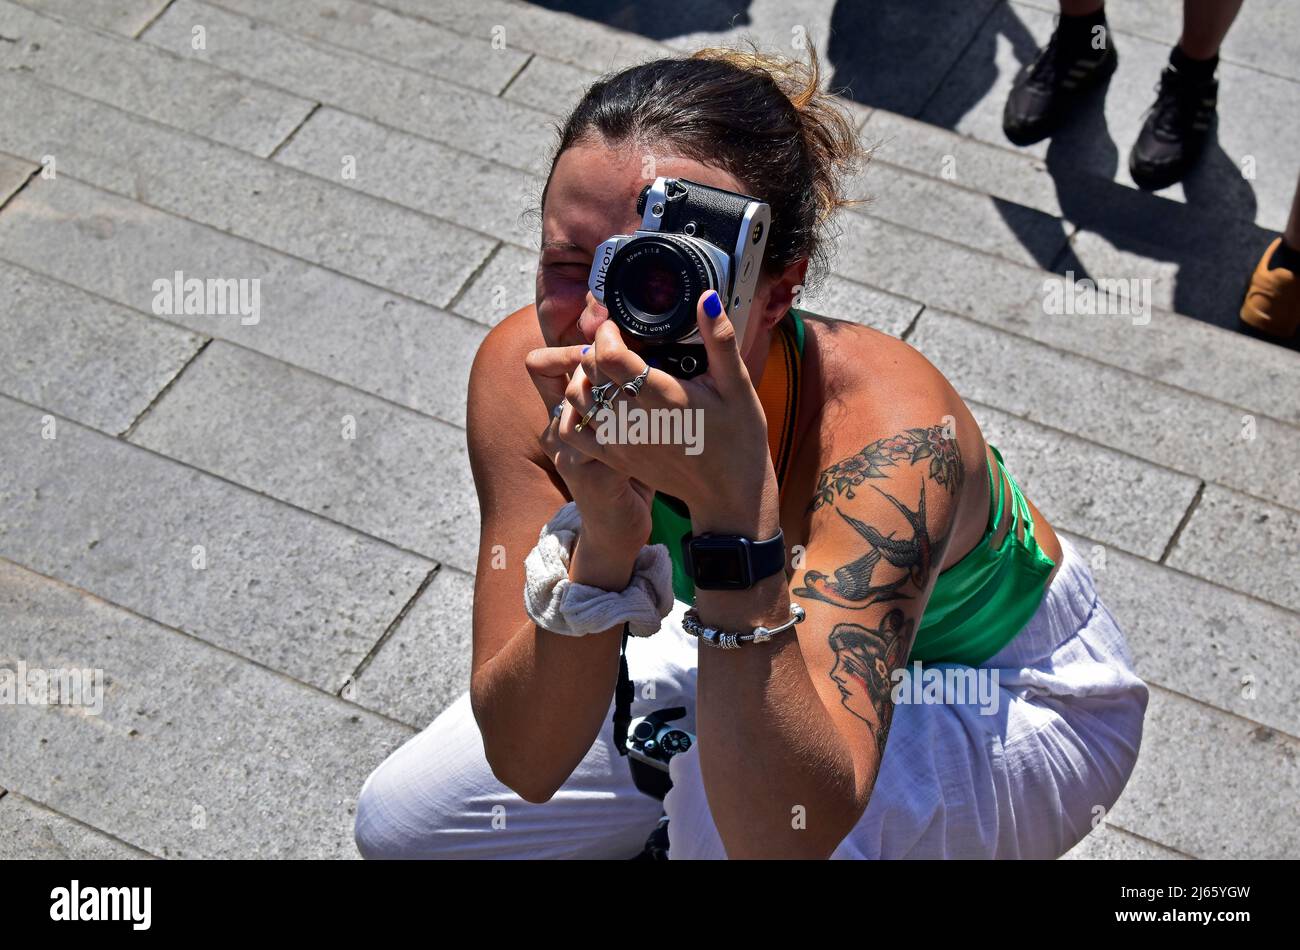 RIO DE JANEIRO, BRASILE - 16 MARZO 2022: Giovane donna brasiliana che fotografa sul posto turistico Foto Stock